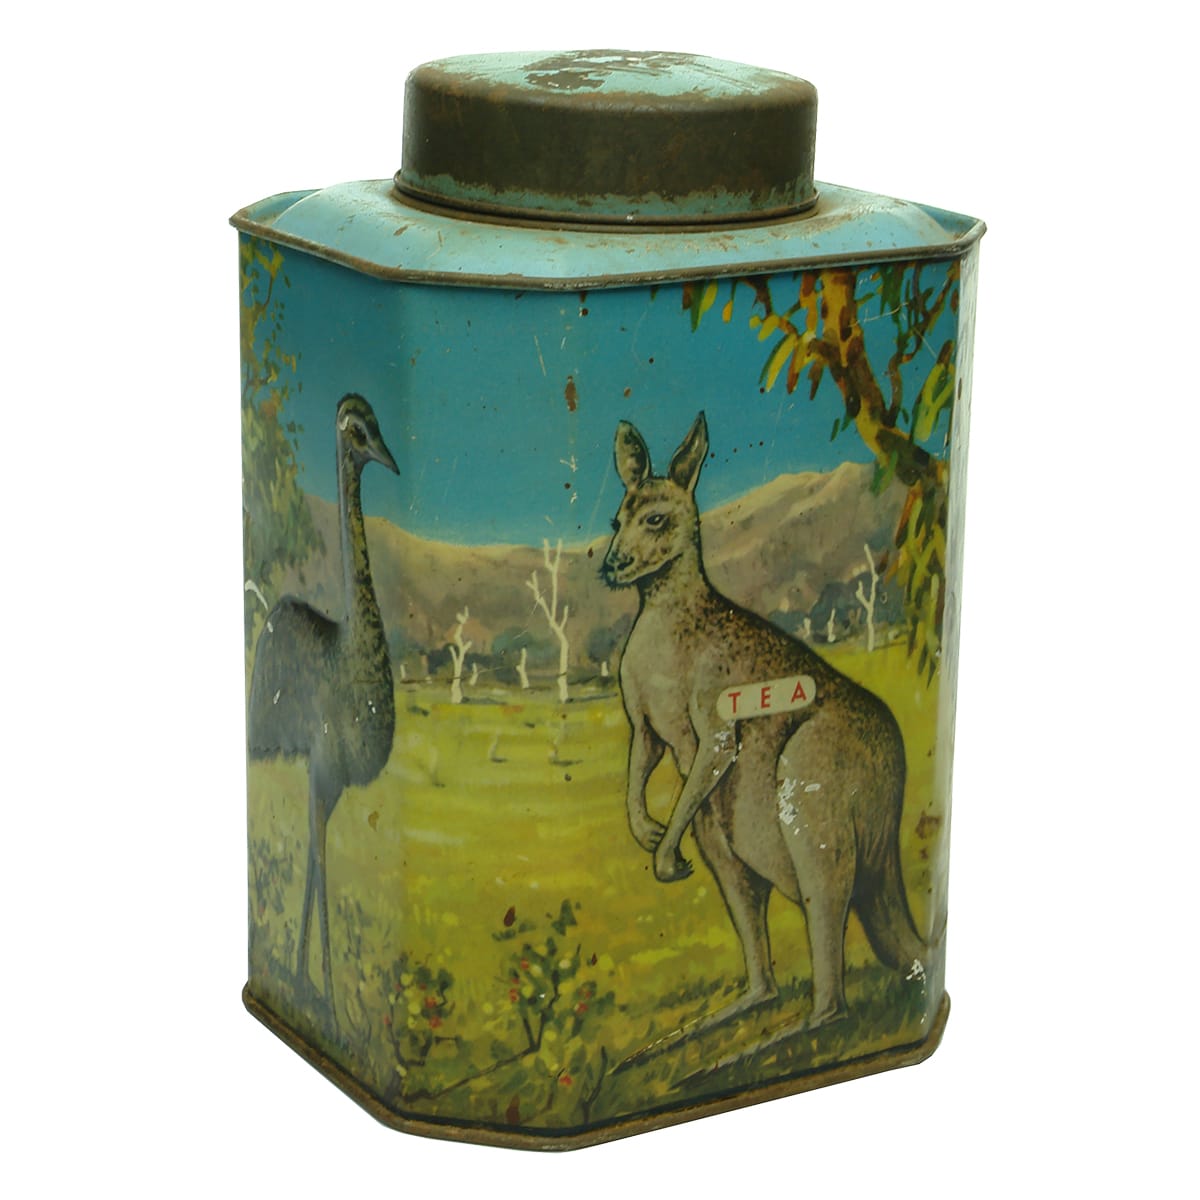 Tin. Bushells Tea of Flavor. Kangaroo, Koala, Kookaburra, Emu.